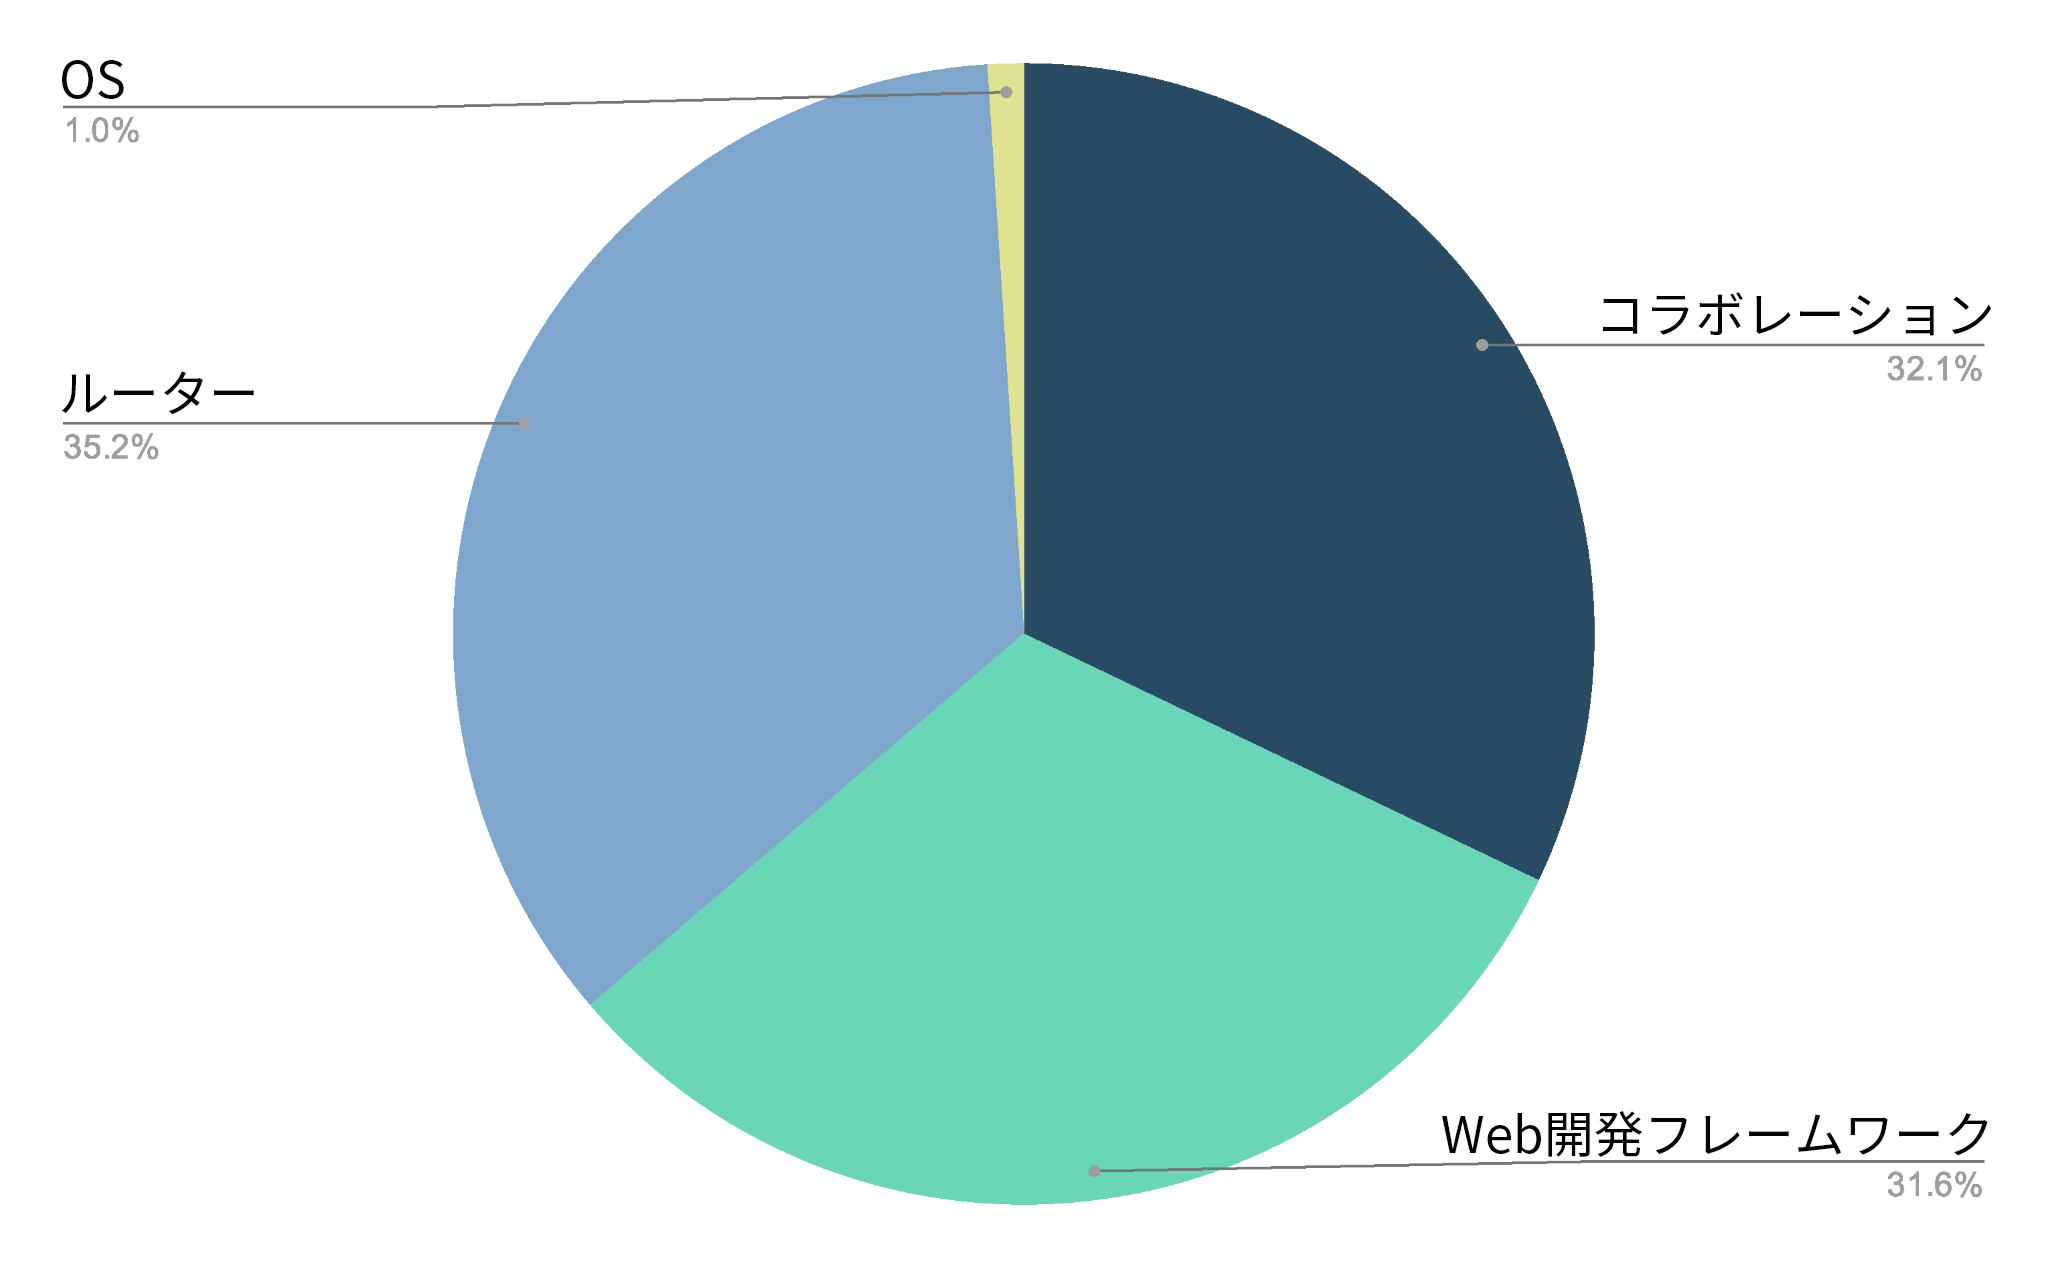 画像 5 は、最も狙われる技術スタックのカテゴリーを示した円グラフです。コラボレーション、Web 開発フレームワーク、ルーターは、それぞれ 32.1%、31.6%、35.2% とほぼ均等に分かれています。オペレーティング システムは 1% でした。